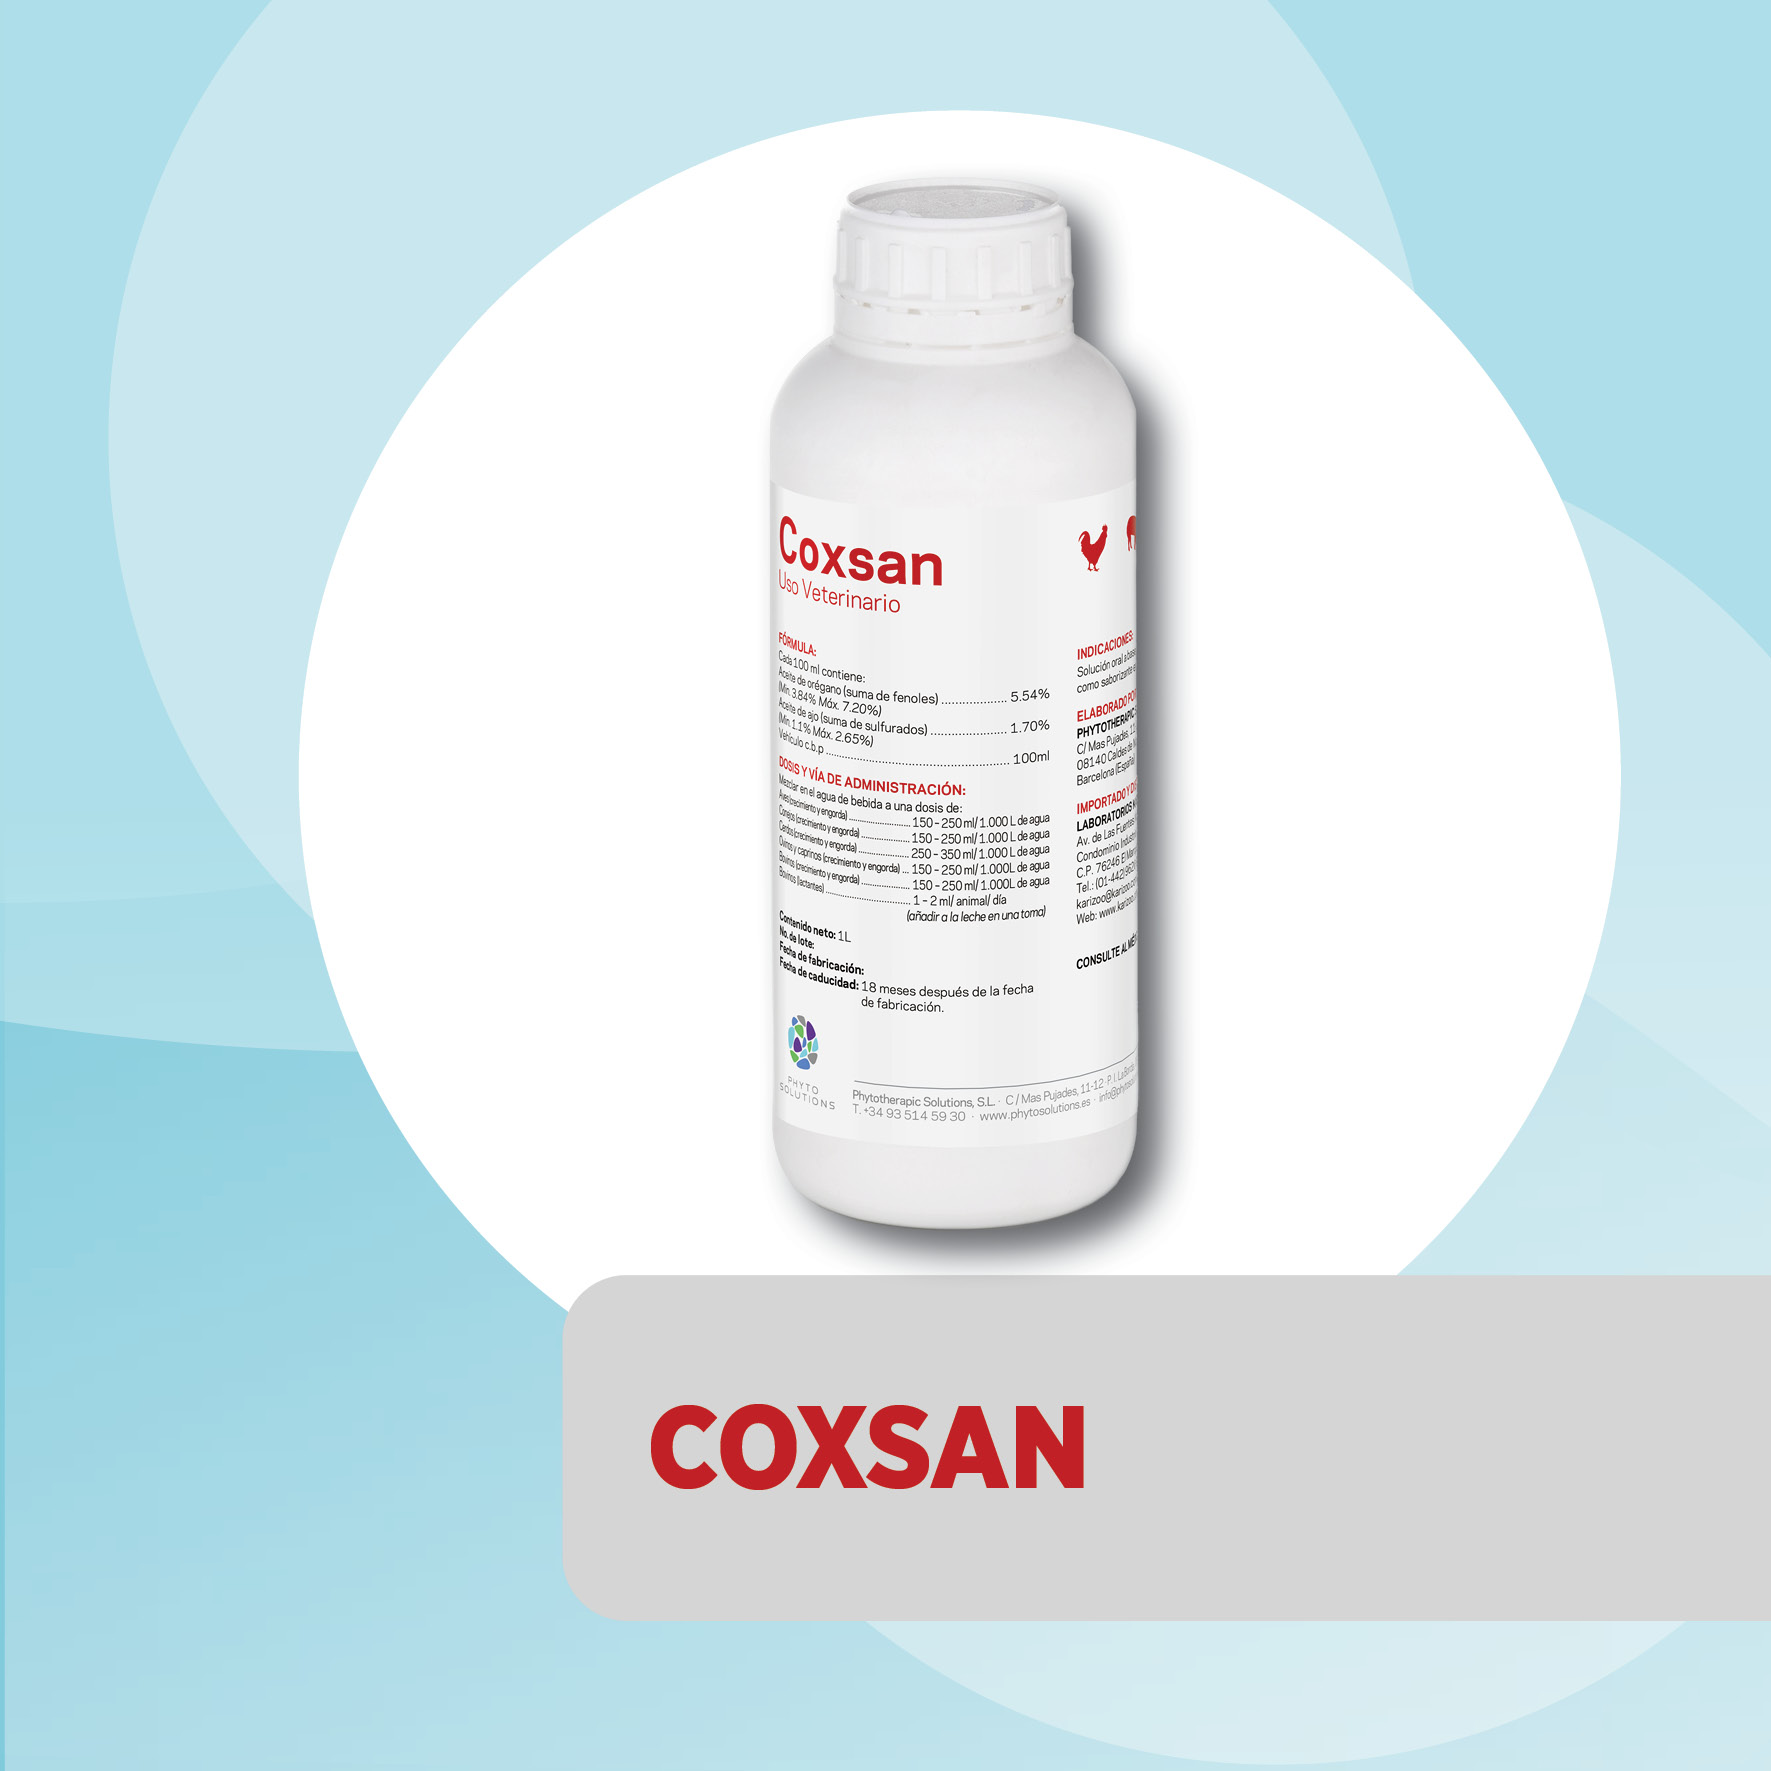 Coxsan